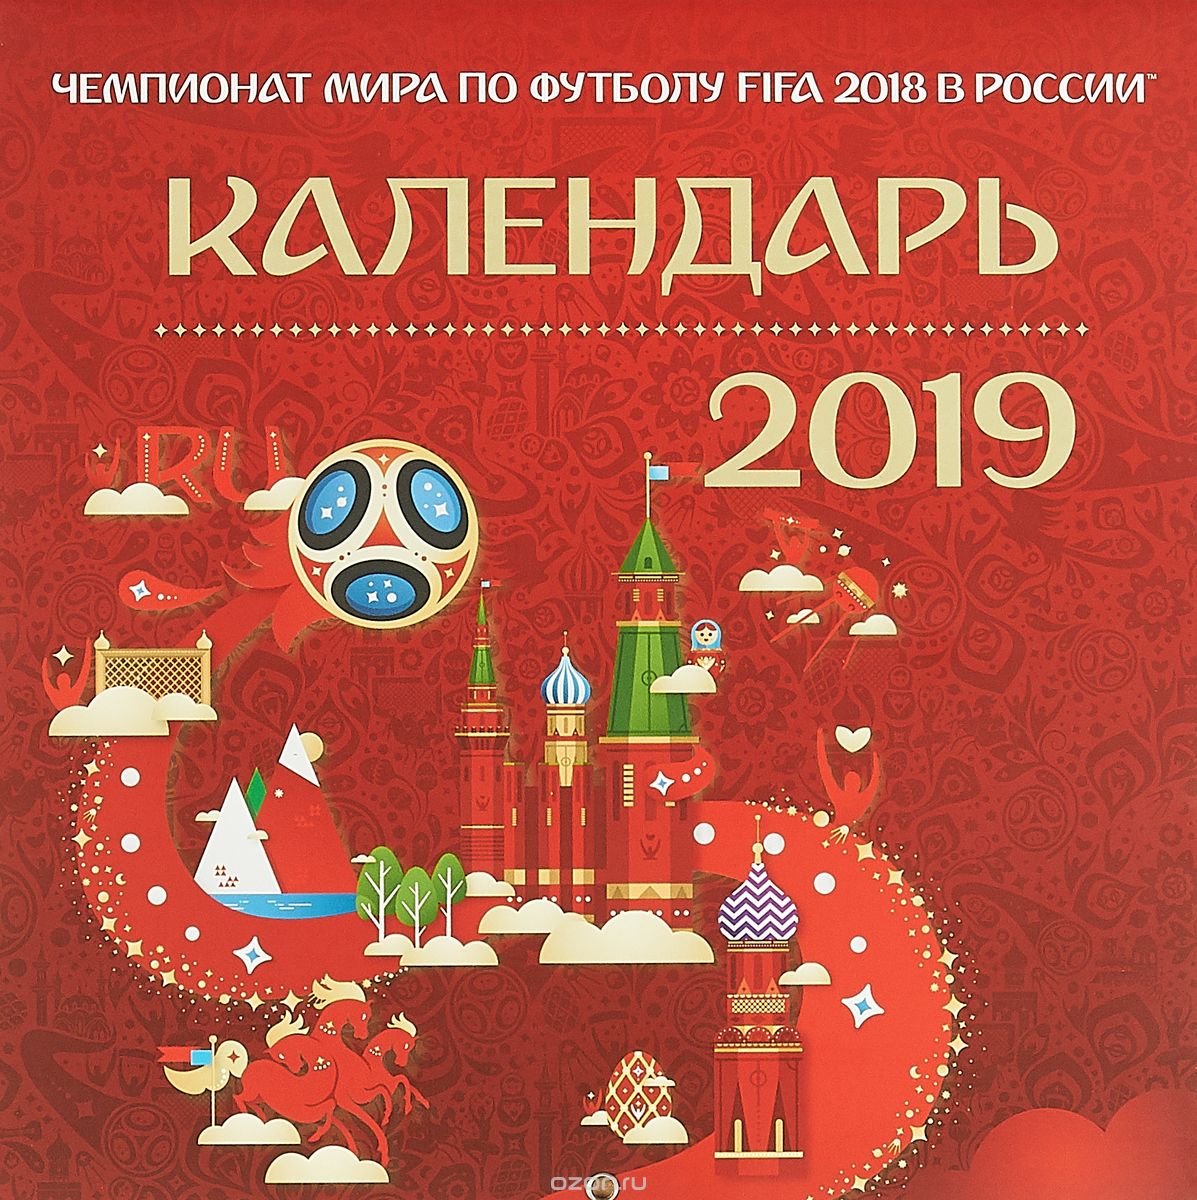     FIFA 2018  .   2019  ()